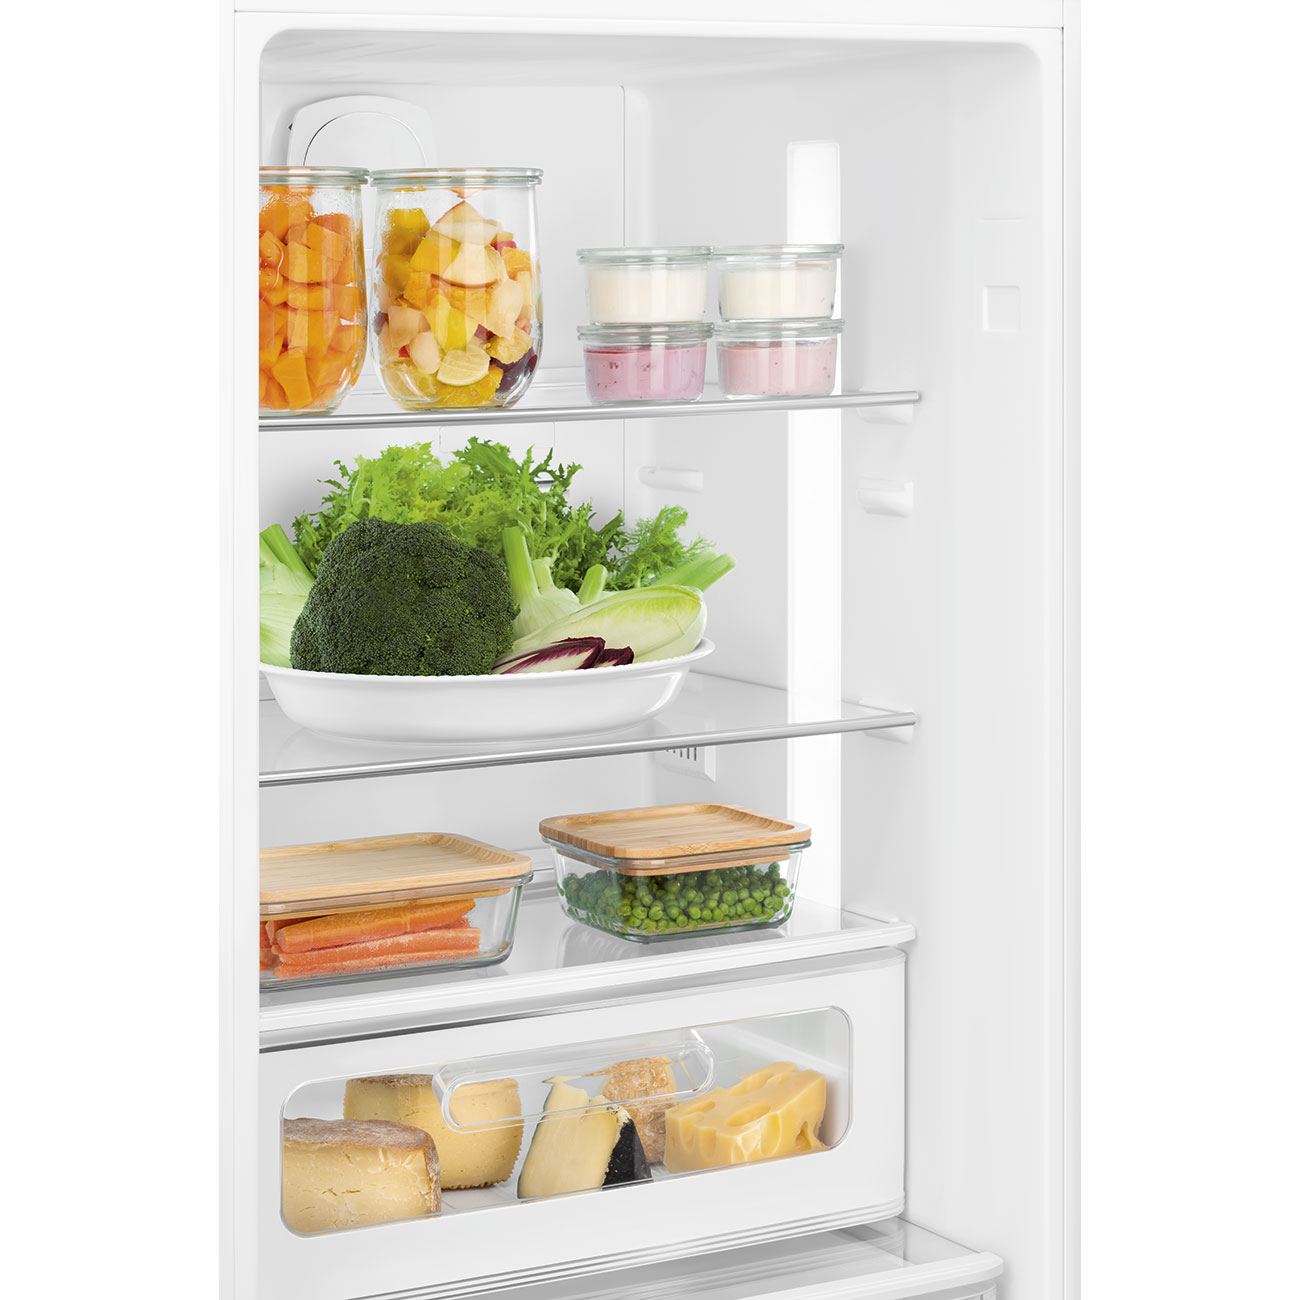 Silber Retro-Kühlschränke von Smeg_7